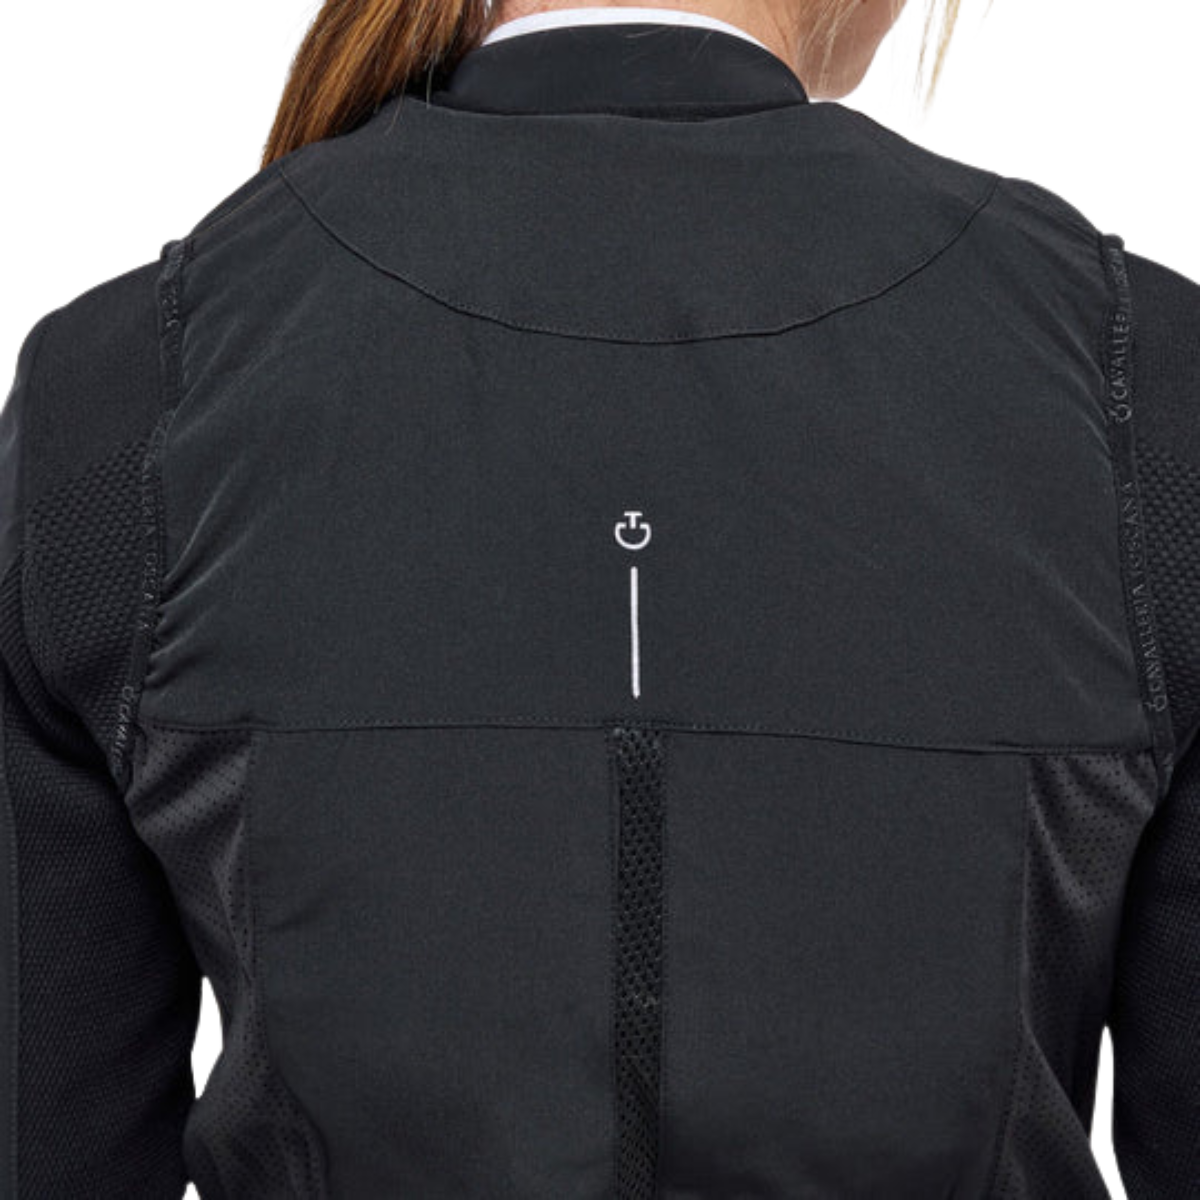 Cavalleria Toscana 'R-Evo' Air Vest in Black